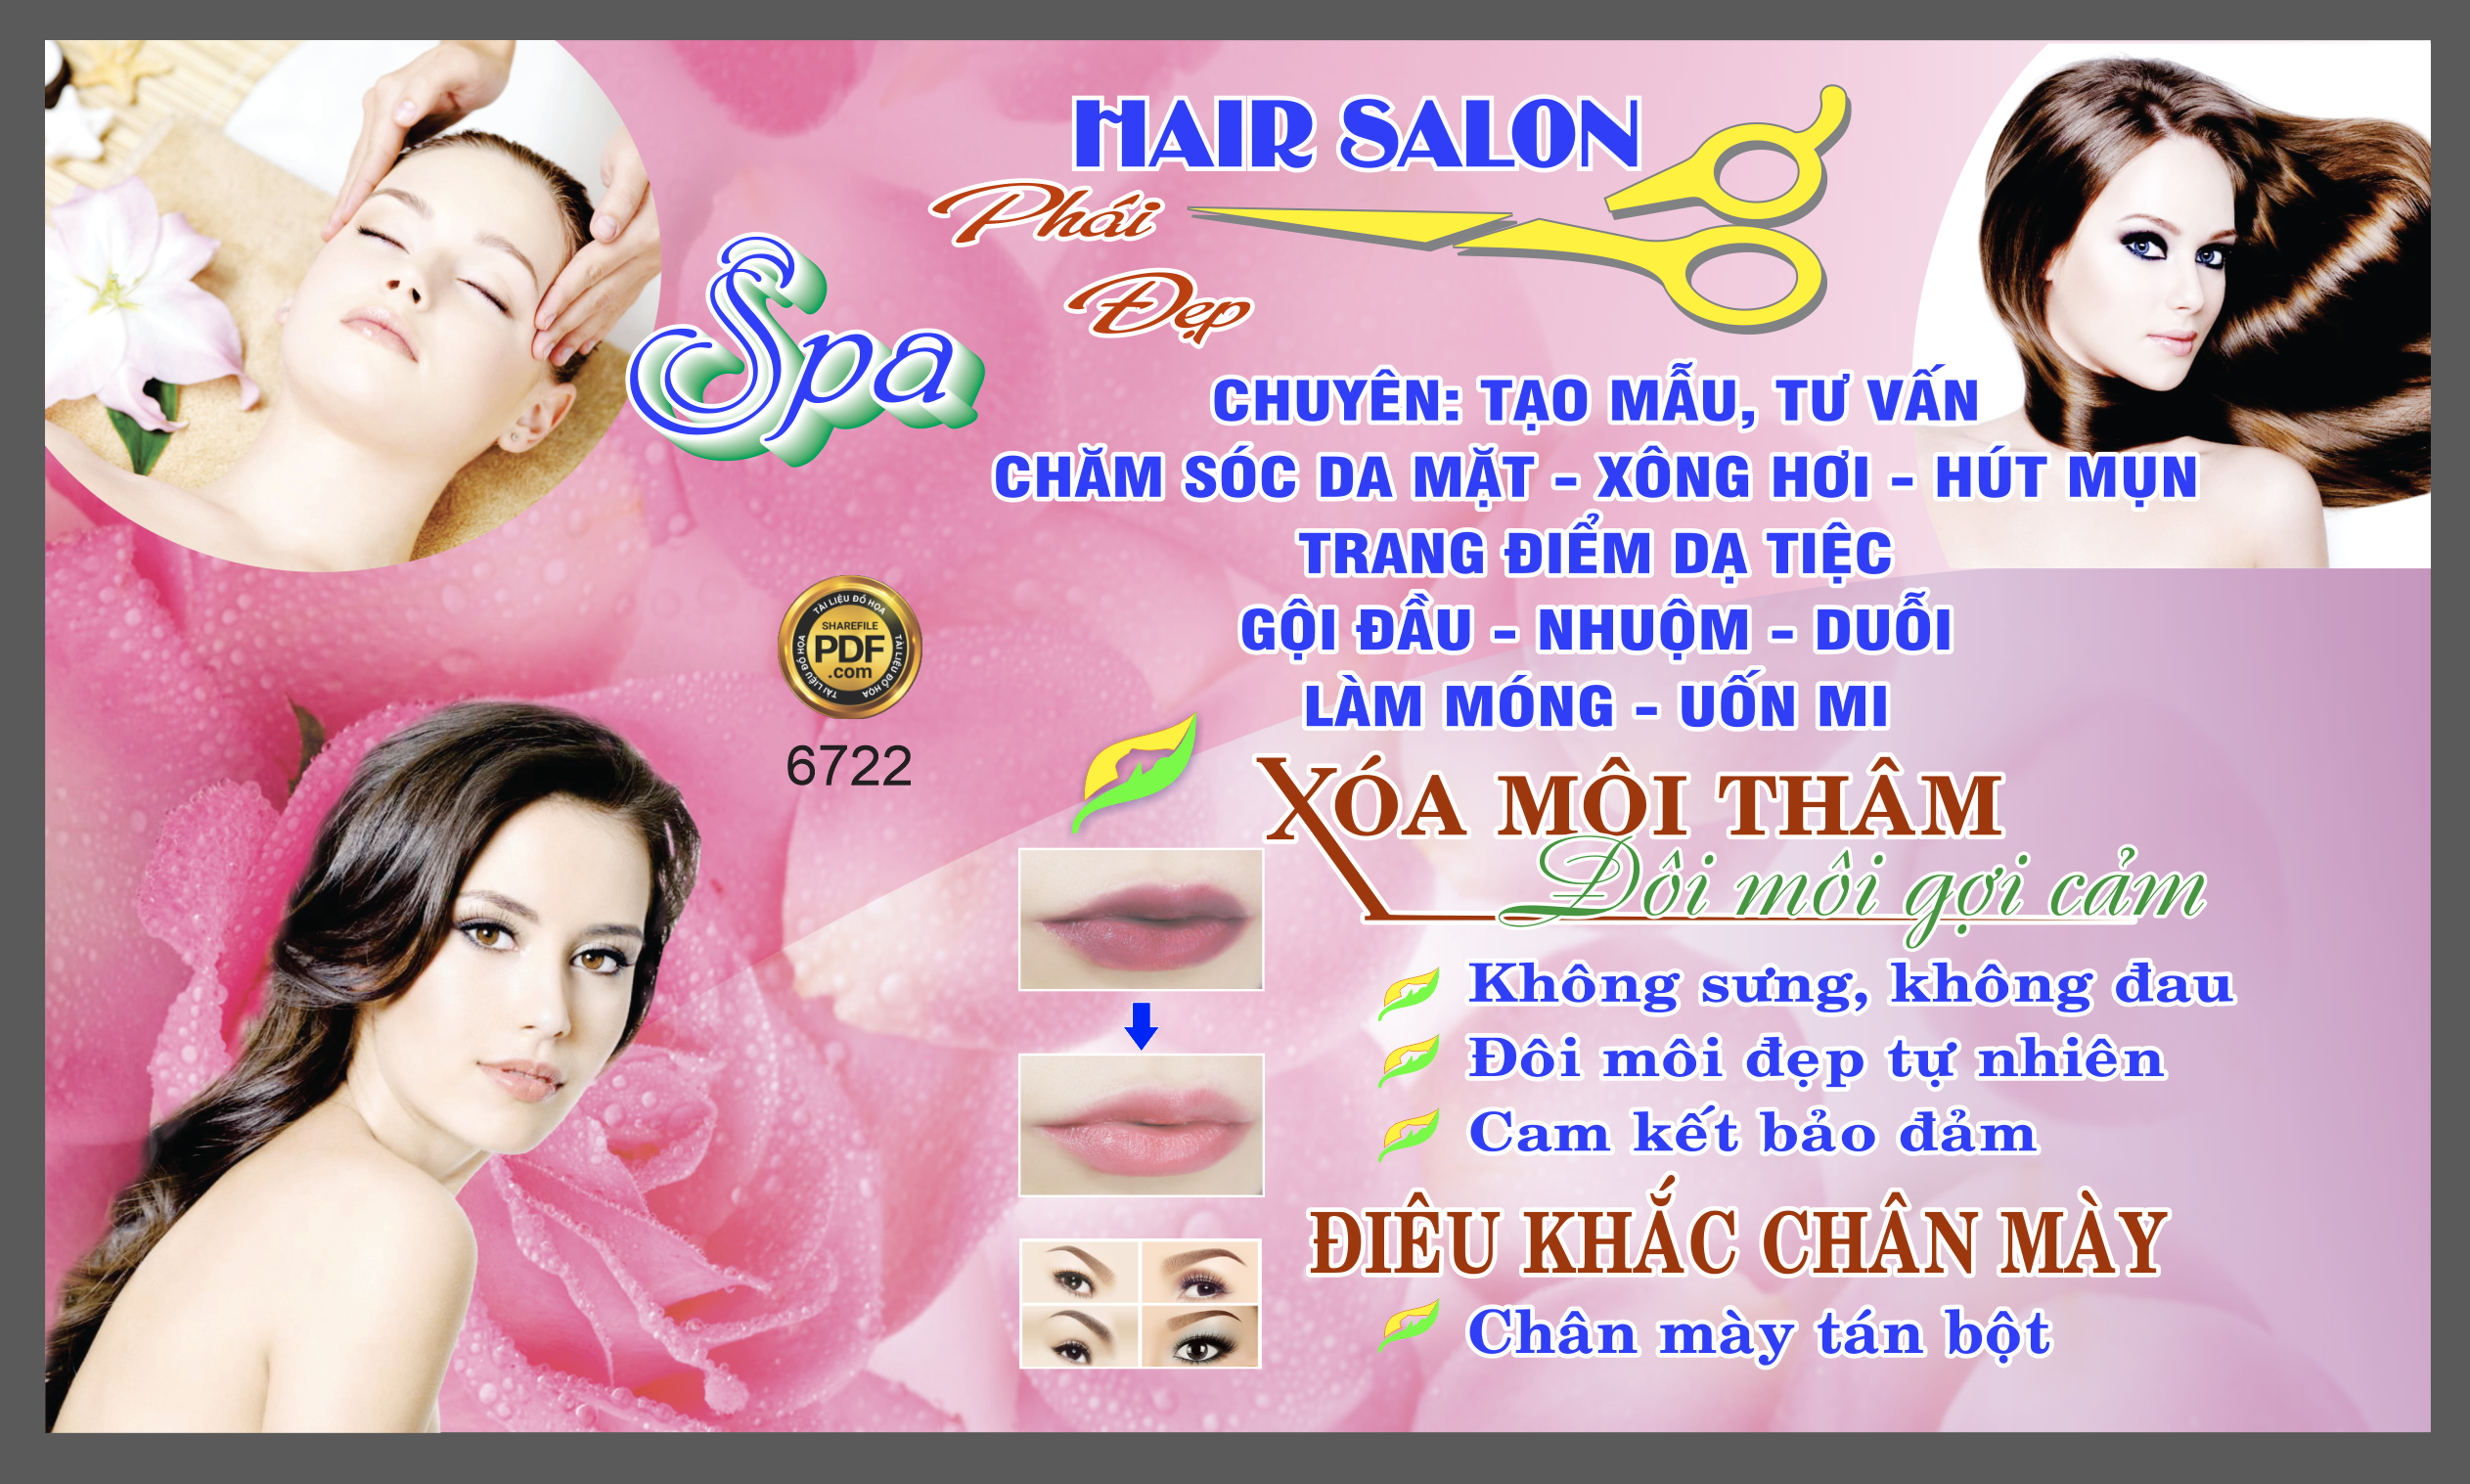 hair salon phai dep - spa tone mau hong.png